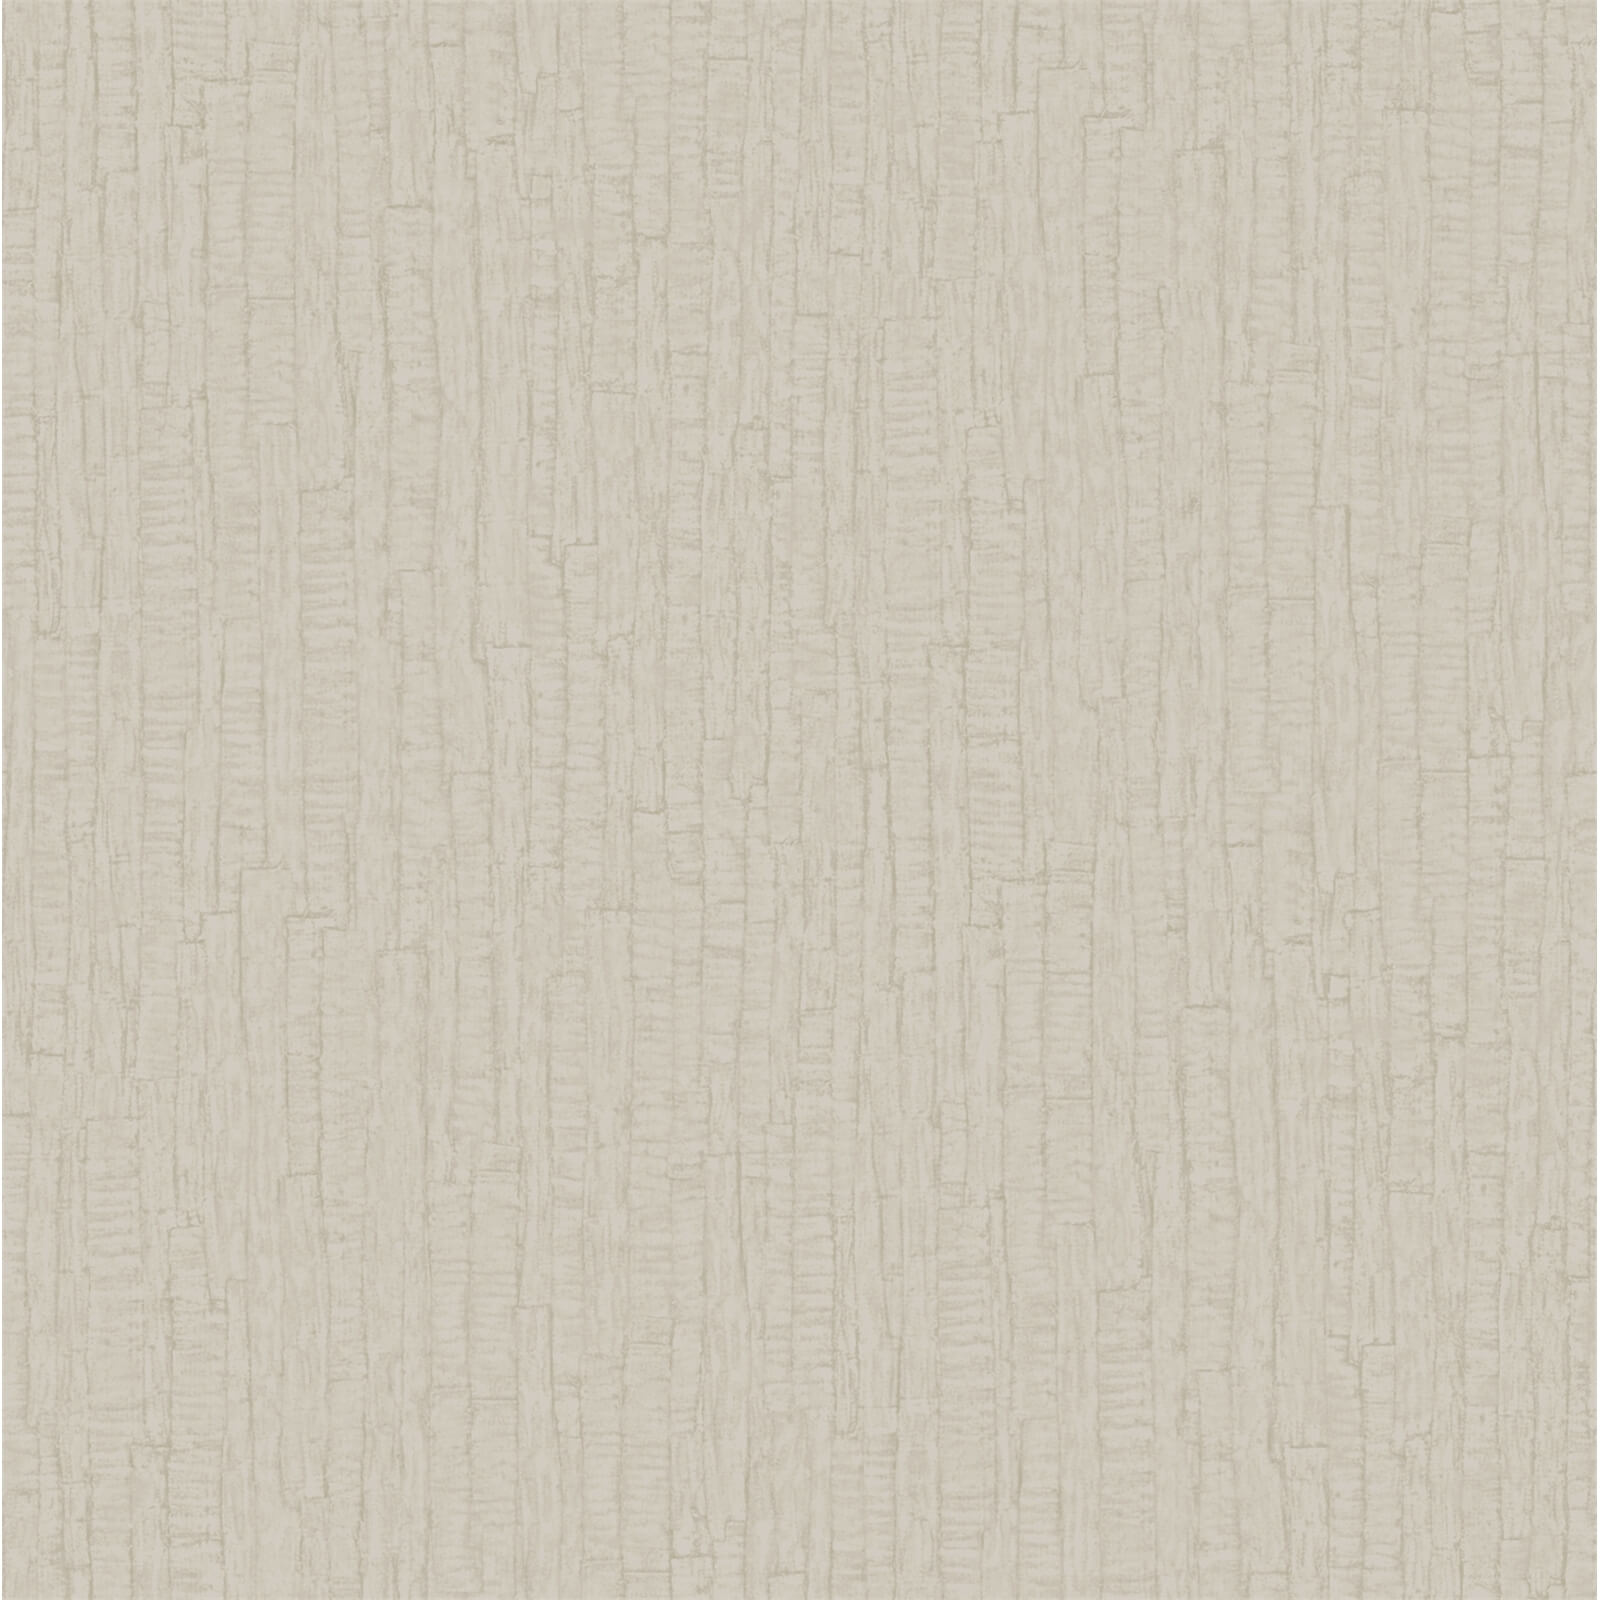 Holden Decor Ornella Bark Plain Embossed Metallic Glitter Cream Wallpaper